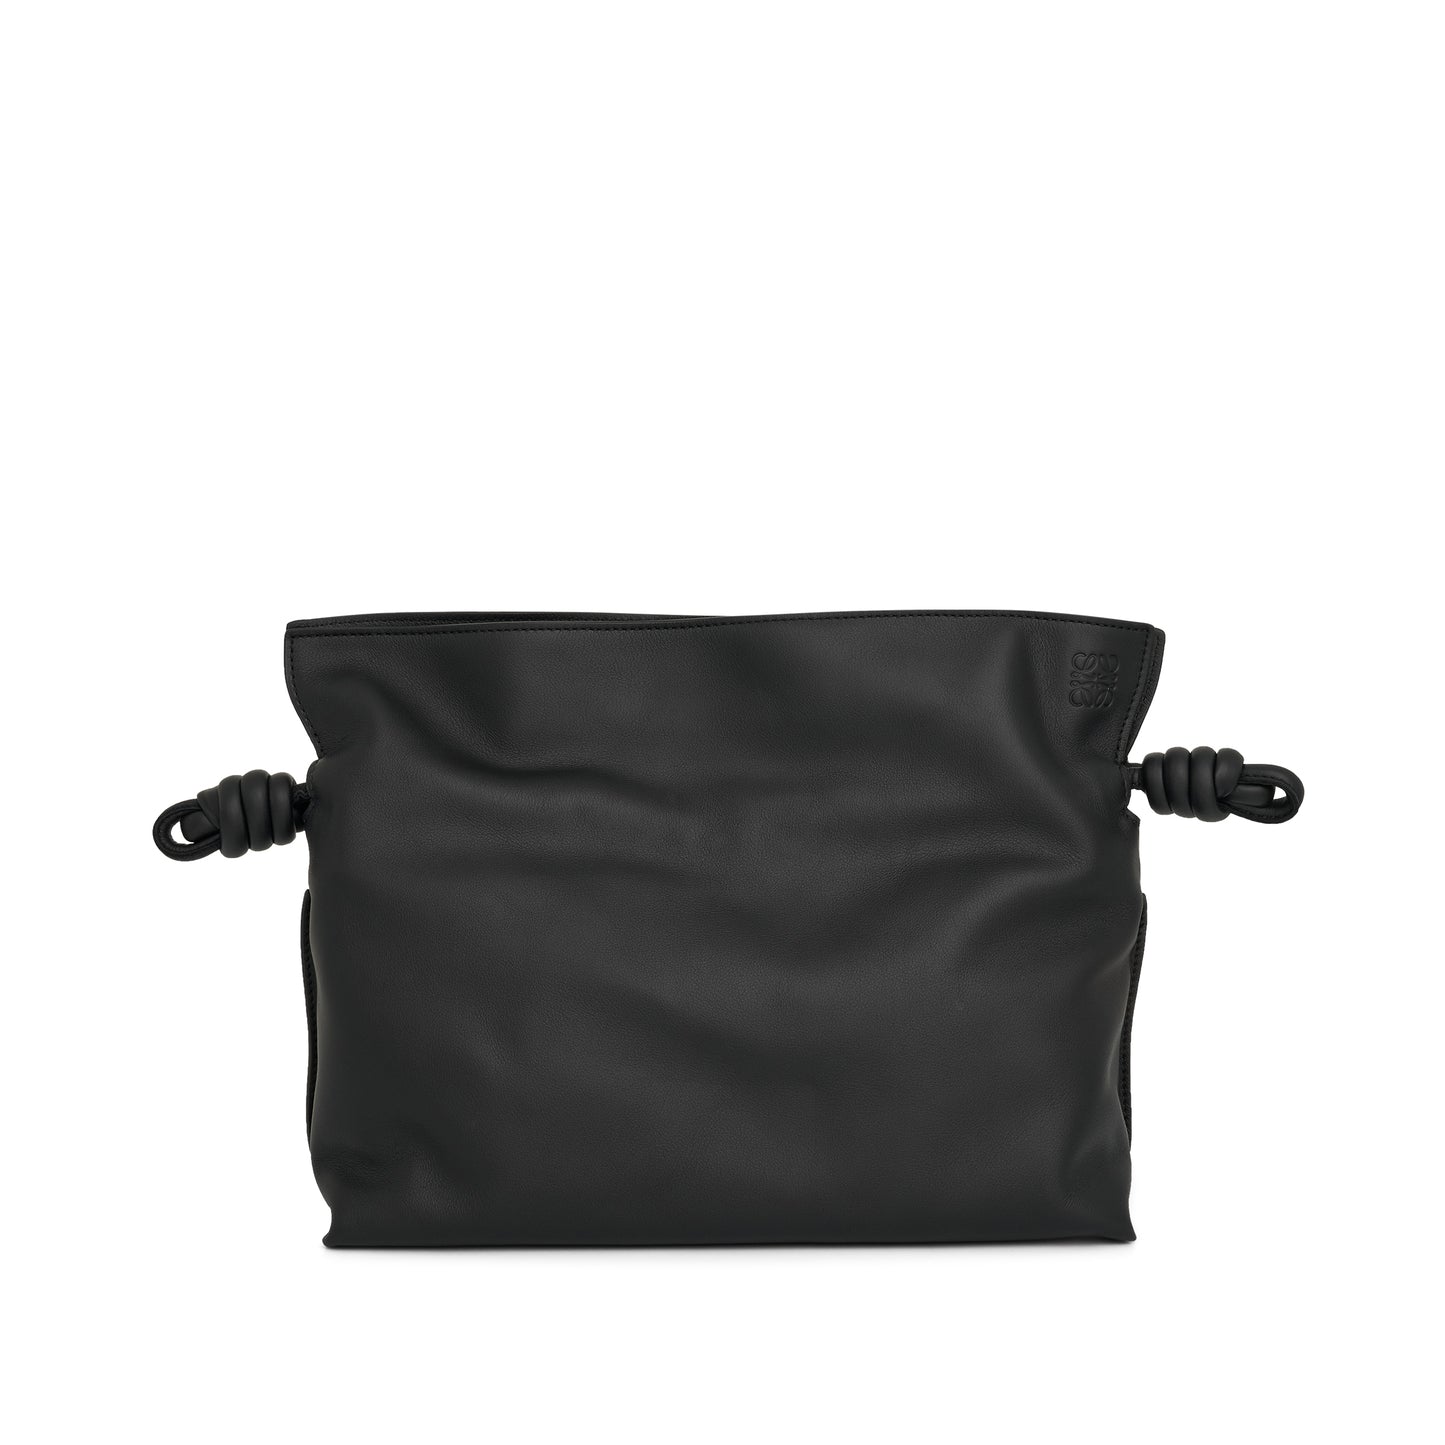 Flamenco Clutch Bag in Black